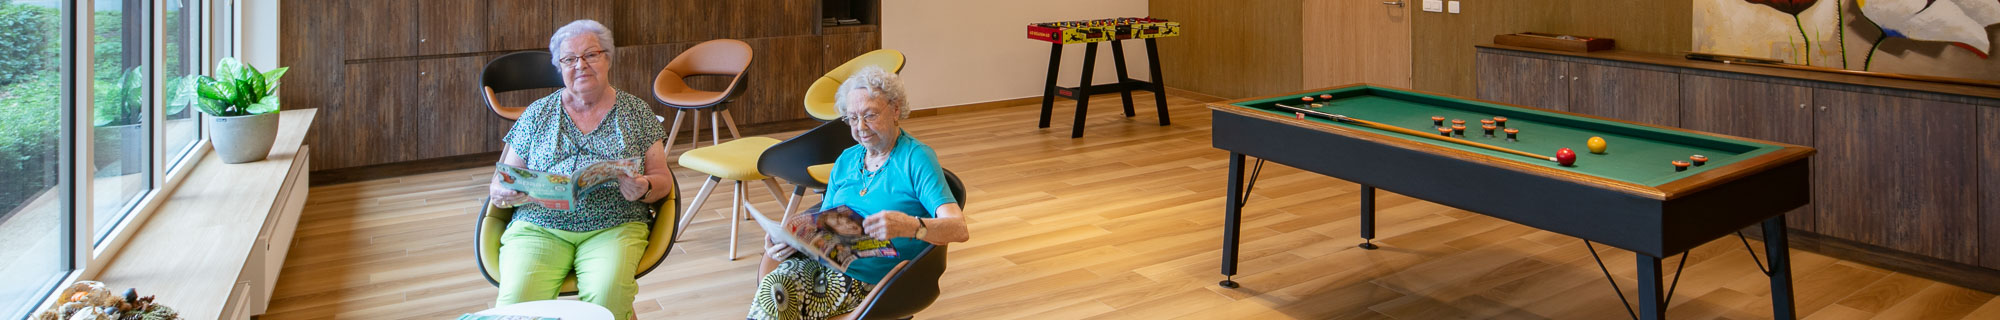 Seniorenzorg Philippus Neri twee senioren dames lezen een managzine in de leefruimte